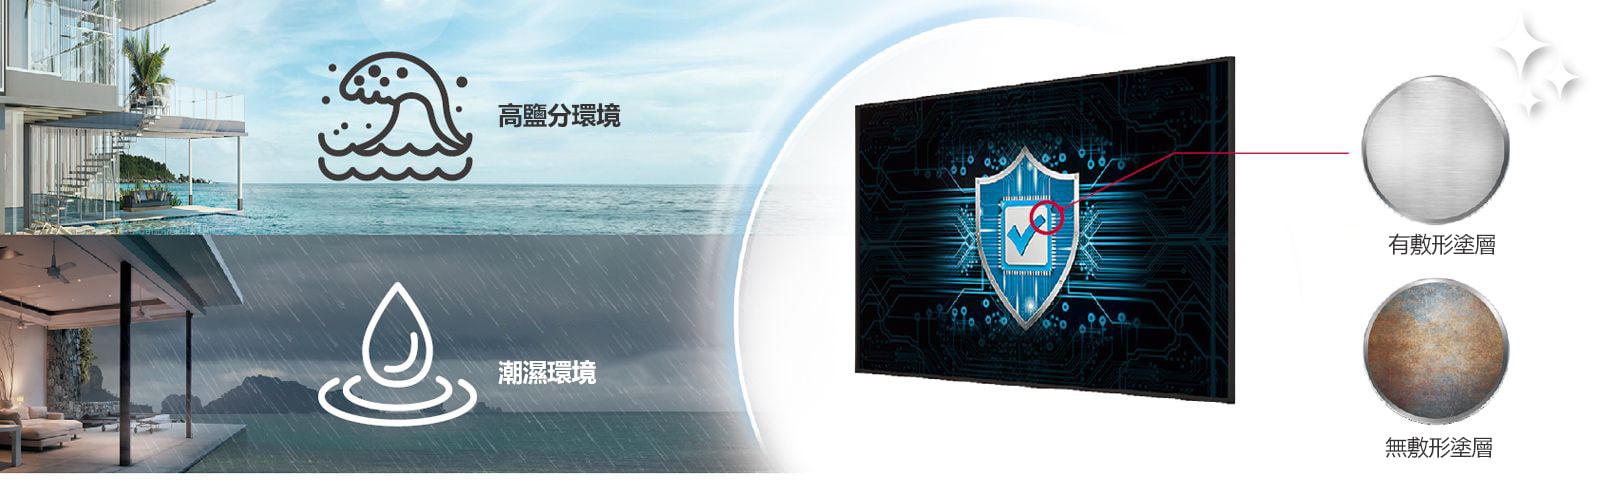 UH5N-E 的電源板上具有塗層物料，即使在含鹽或潮濕的環境中也能保護顯示器。